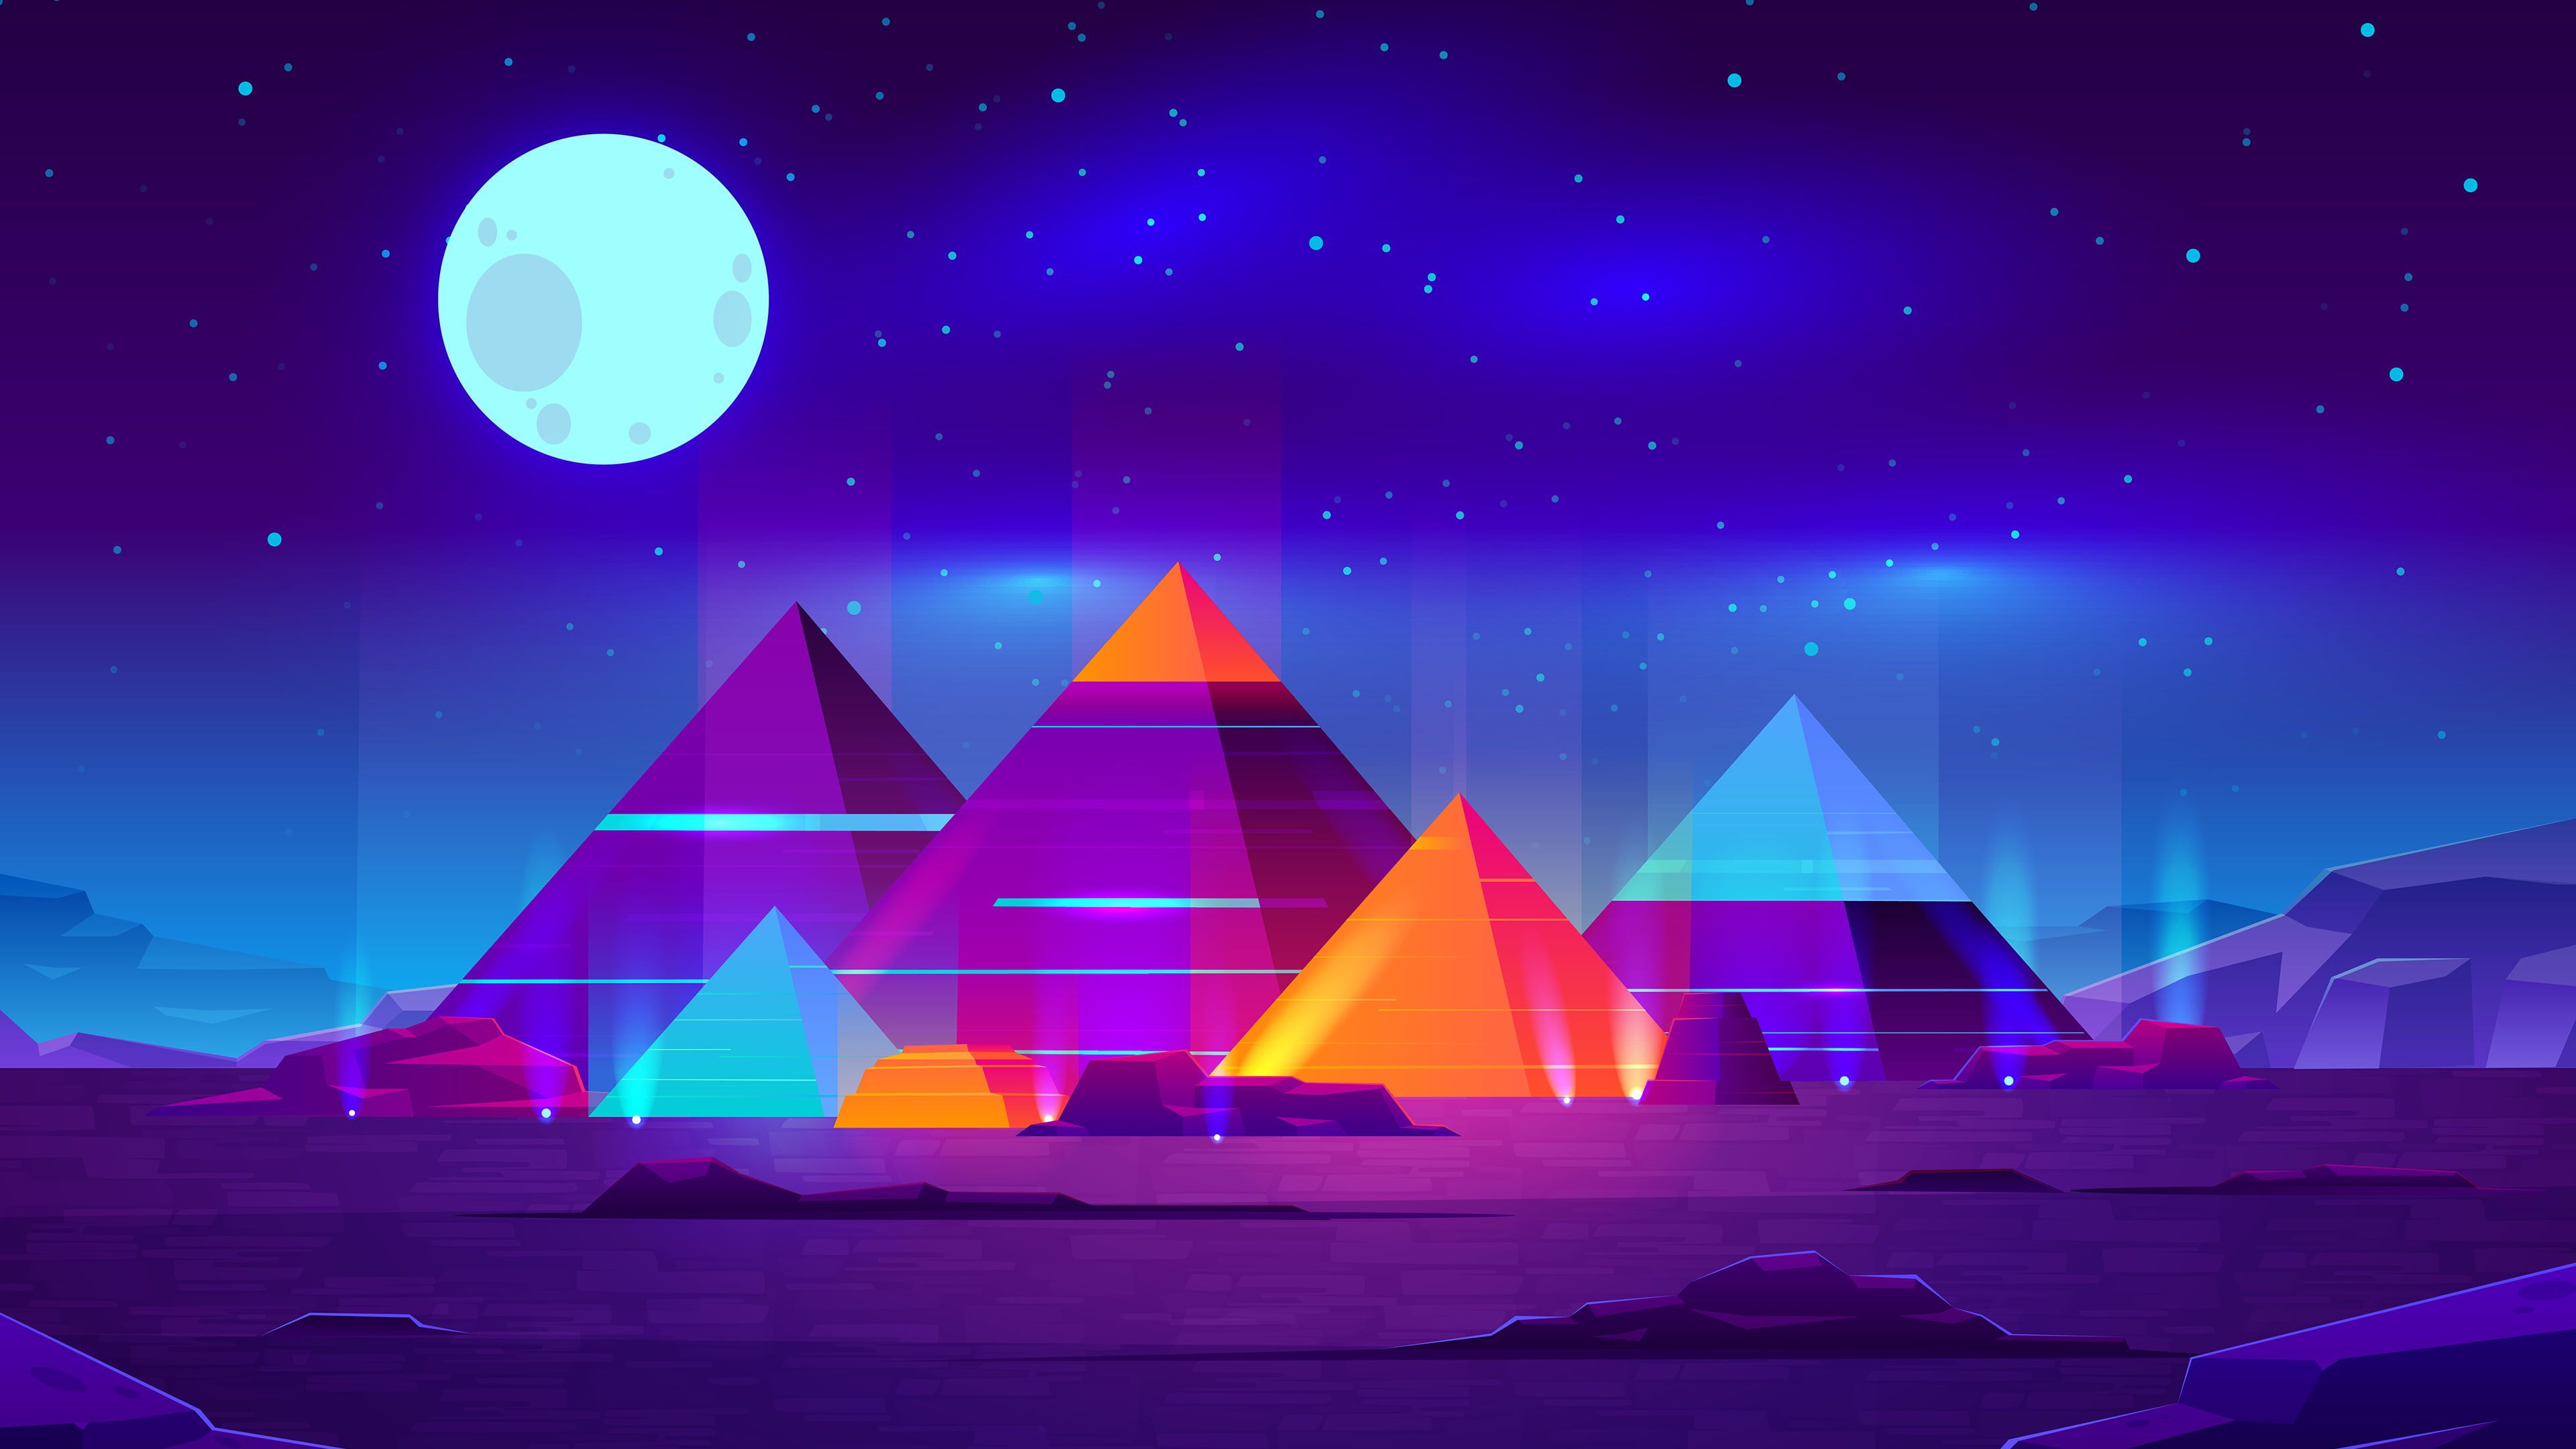 pyramid #Moon #neon digital art #stars #planet #night starry night D K # wallpaper #hdwall. Minimalist wallpaper, Minimalist landscape, Starry night wallpaper